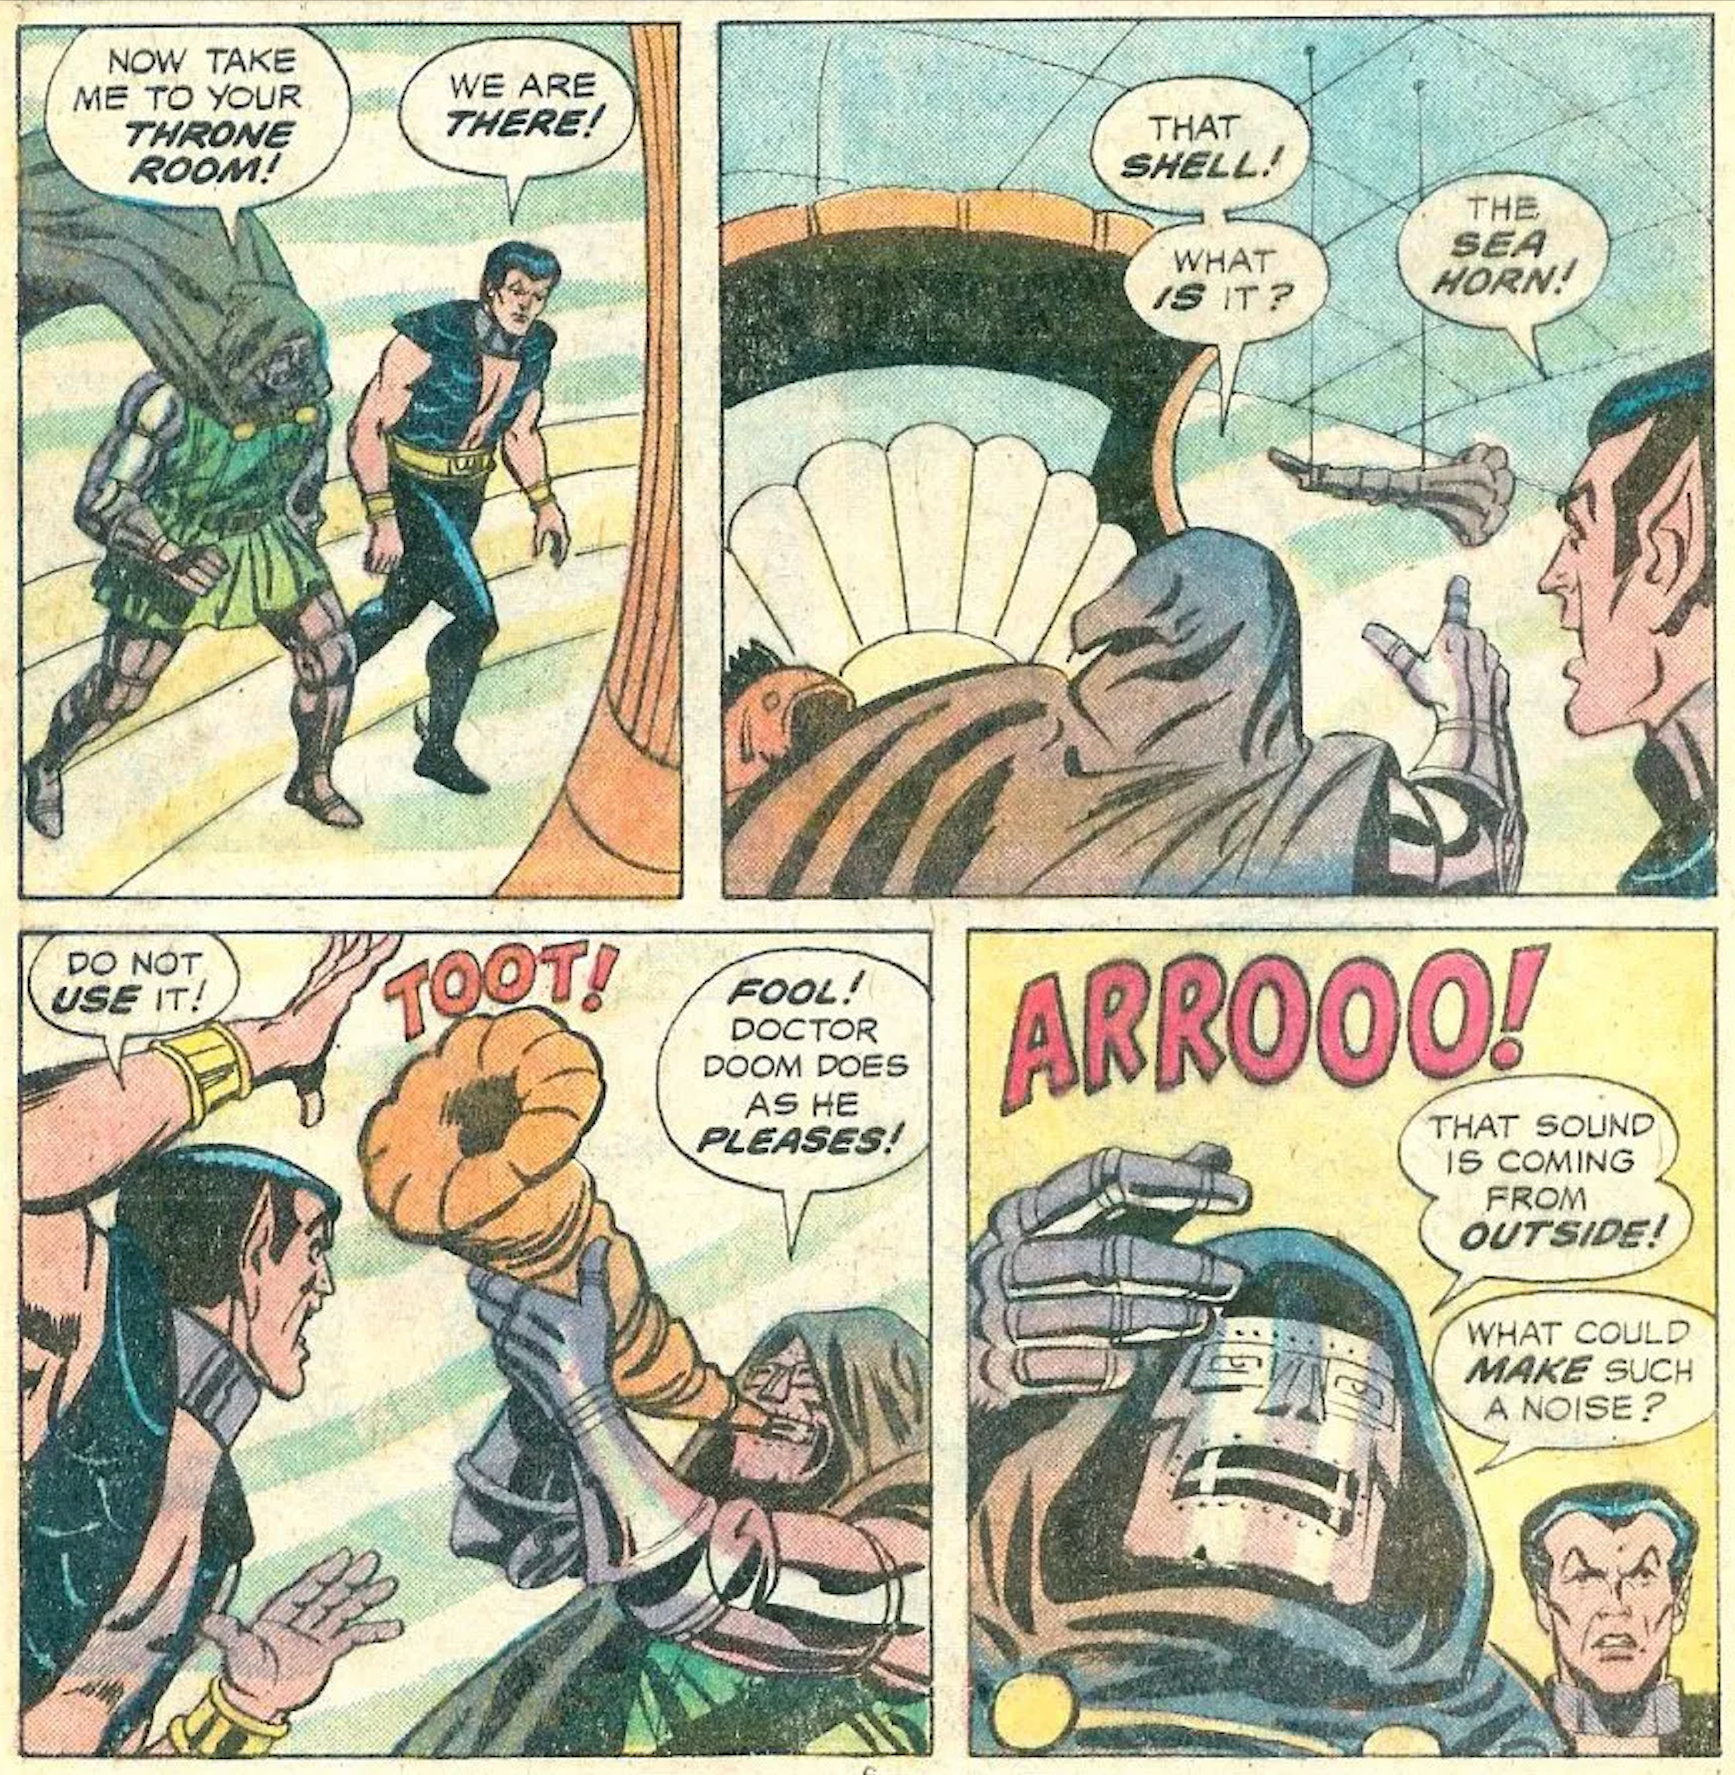 Doctor Doom's Legendary Toot Meme Is Even Funnier in the Comics.